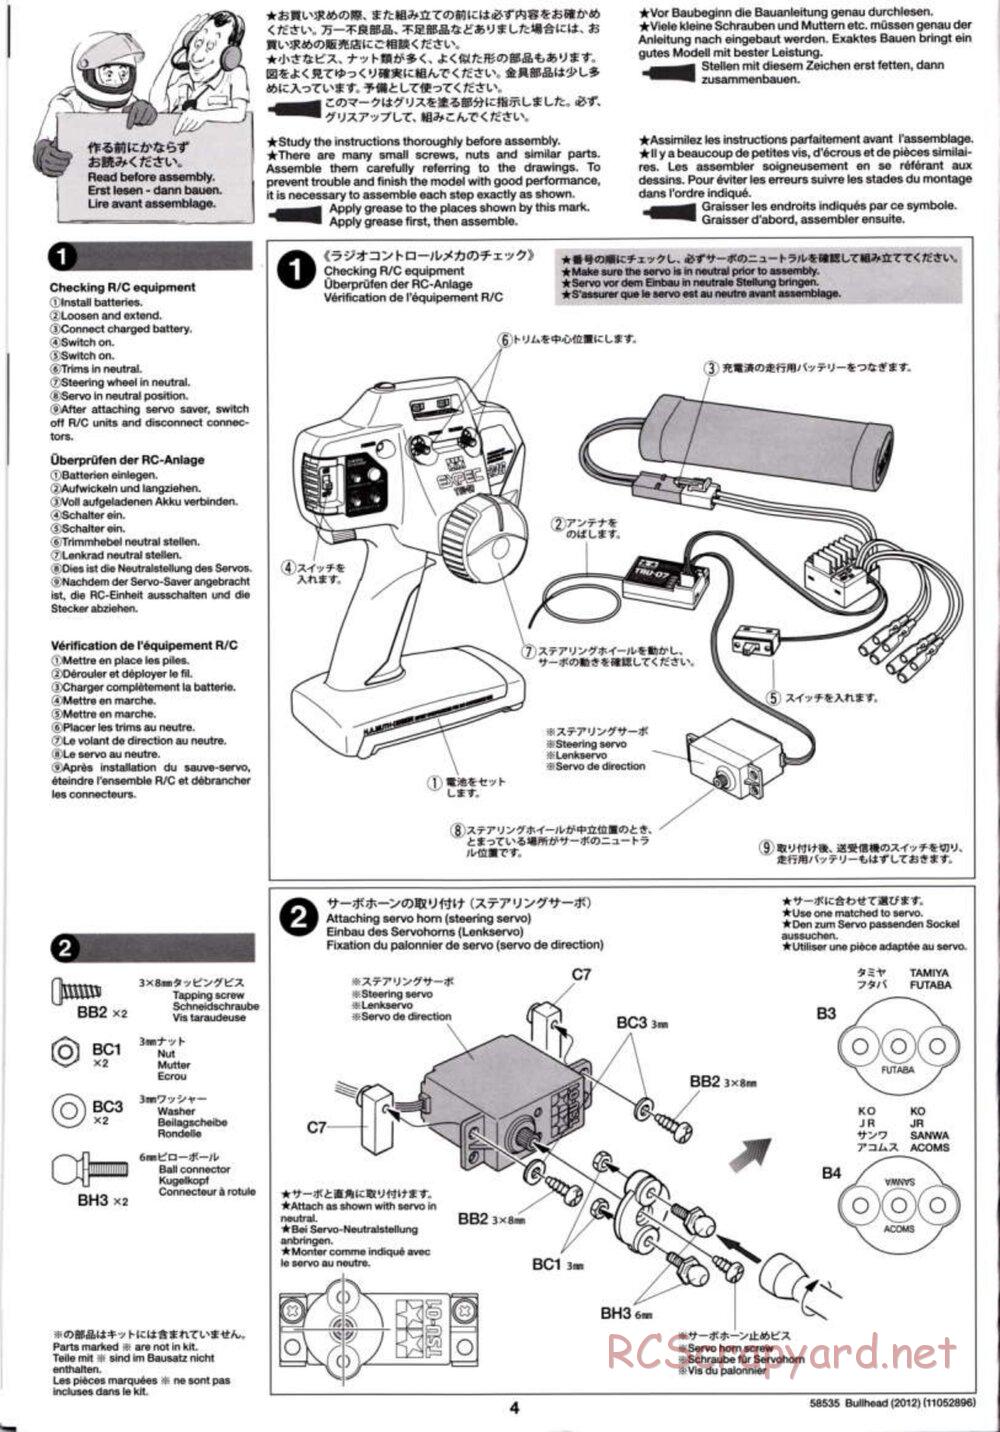 Tamiya - Bullhead 2012 - CB Chassis - Manual - Page 4